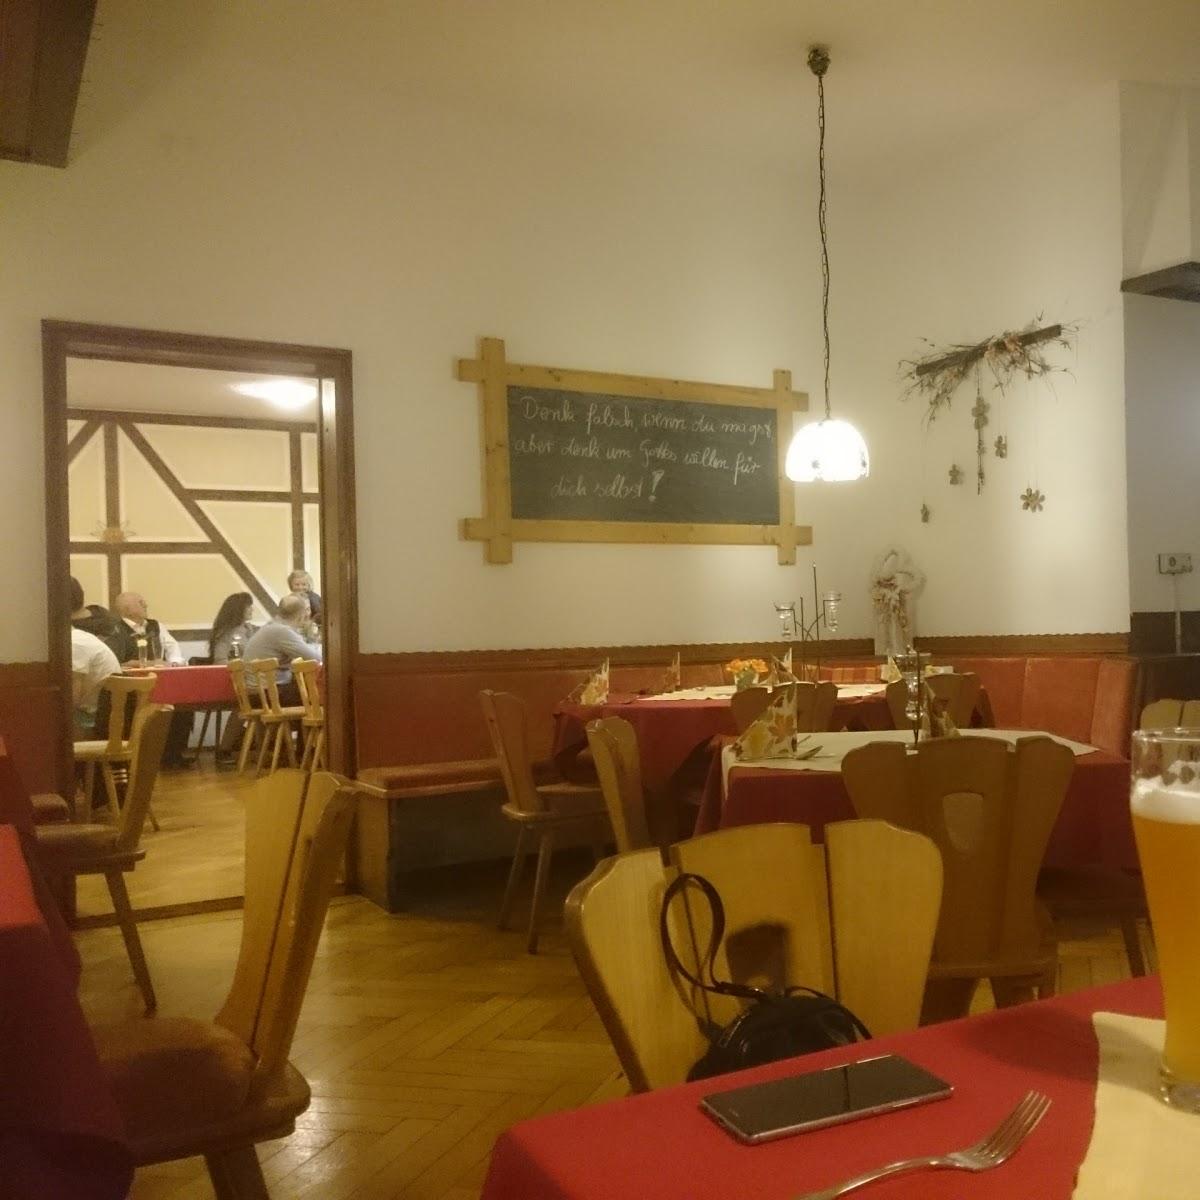 Restaurant "Altdeutsche Bierstube" in Hof